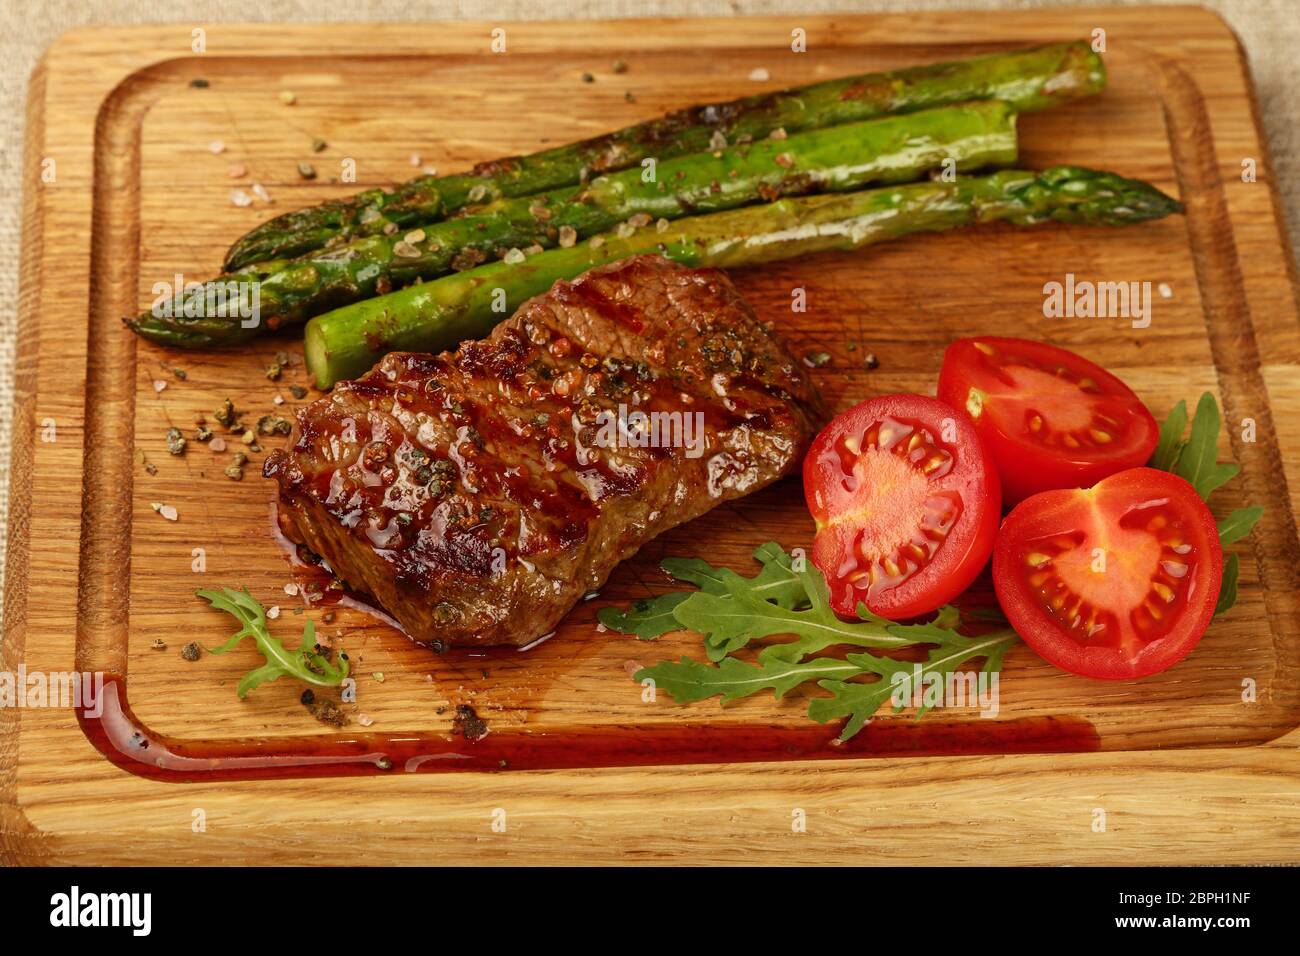 Chiudere una grigliata di carne di manzo arrosto di manzo con asparagi verdi e pomodori ciliegia sul tagliere di legno, ad alto angolo di visione Foto Stock